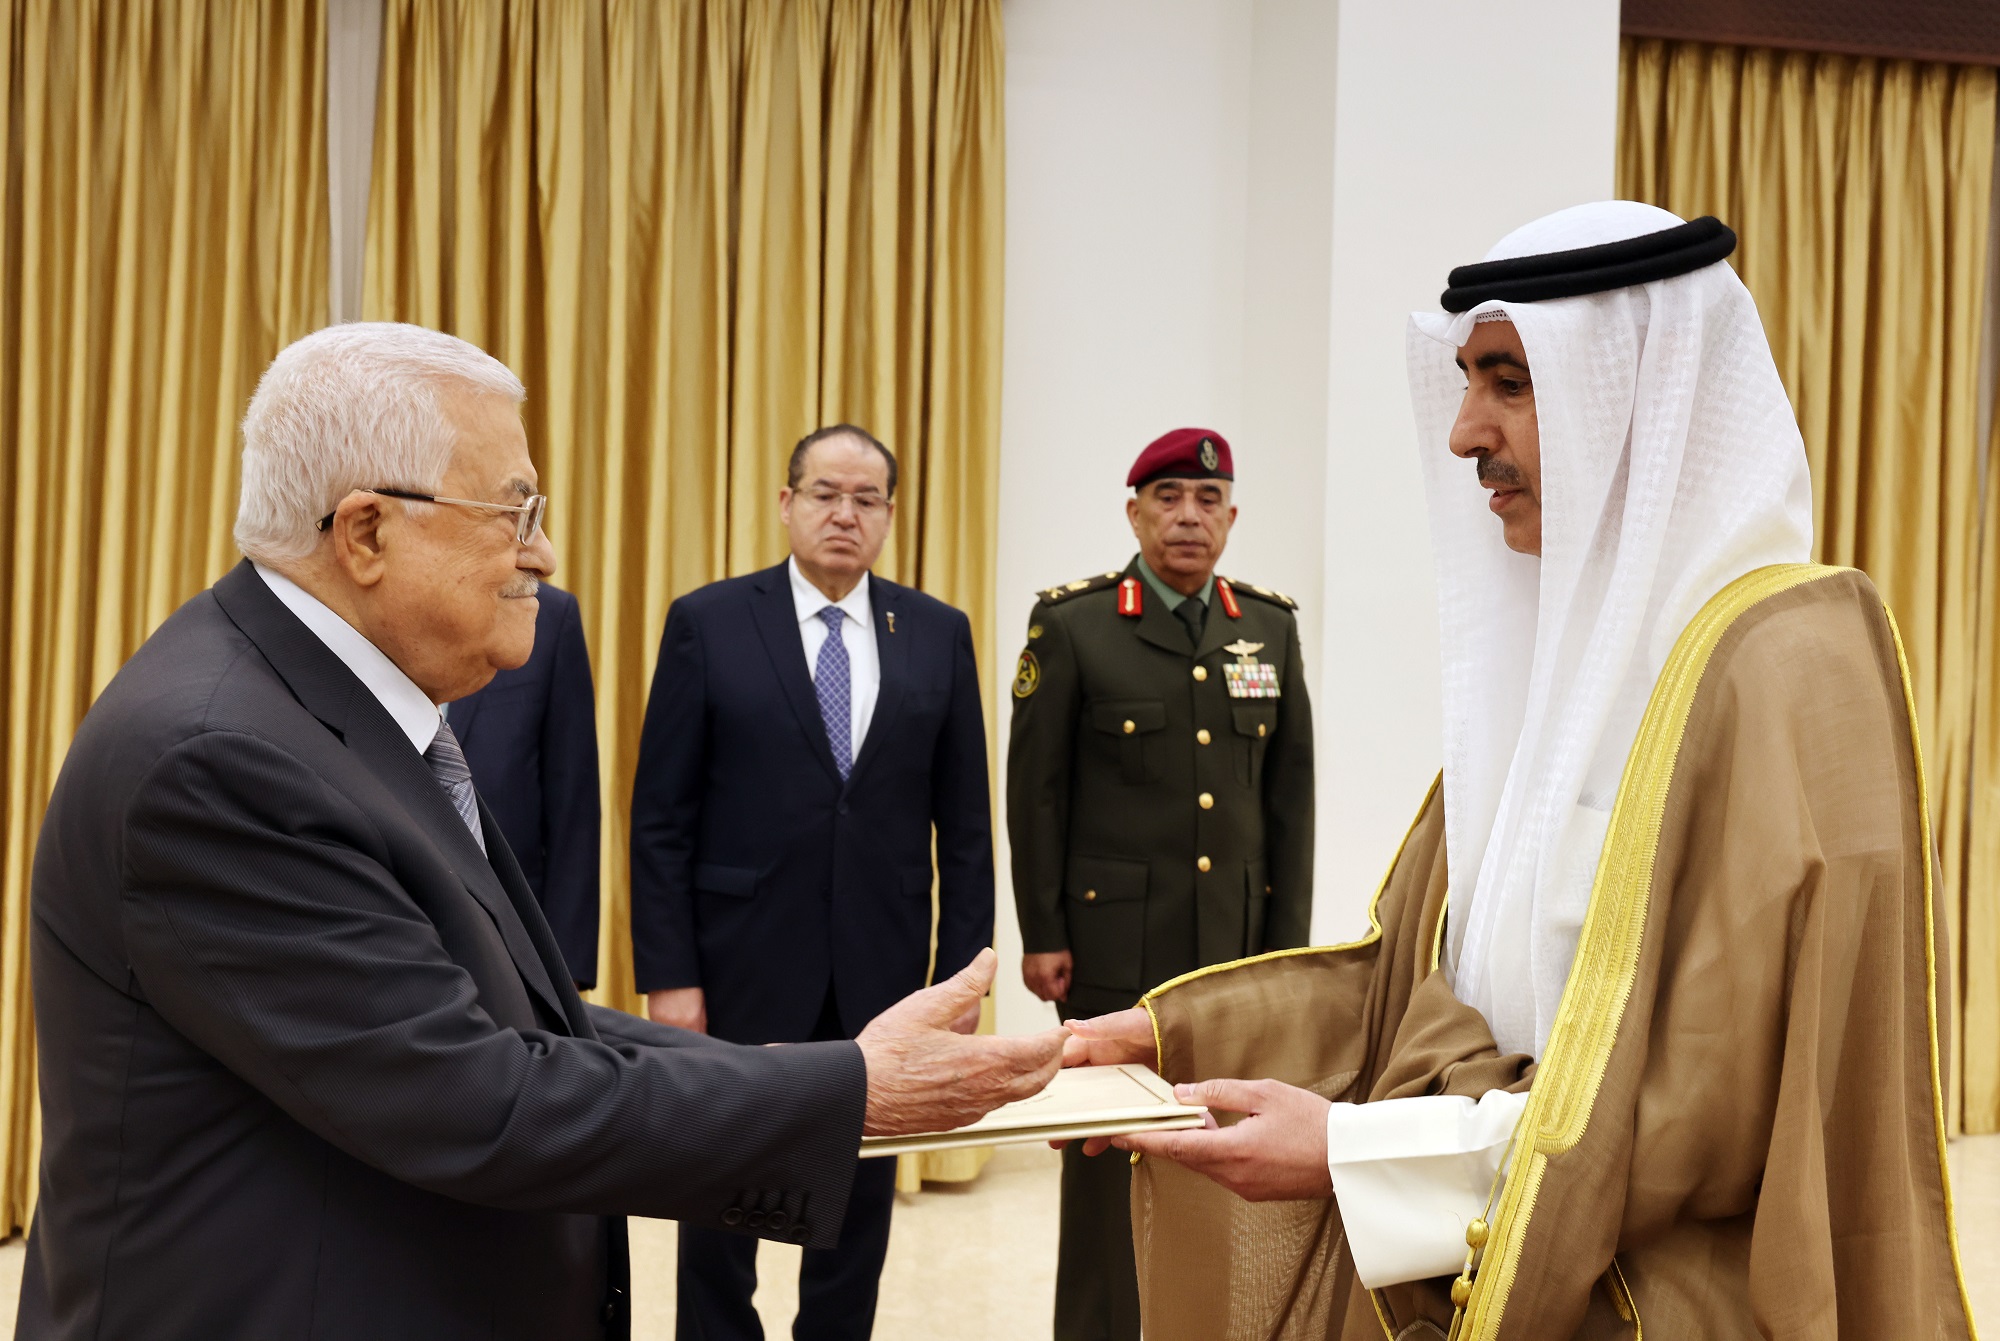 الرئيس يتقبل أوراق اعتماد سفير دولة الكويت لدى دولة فلسطين